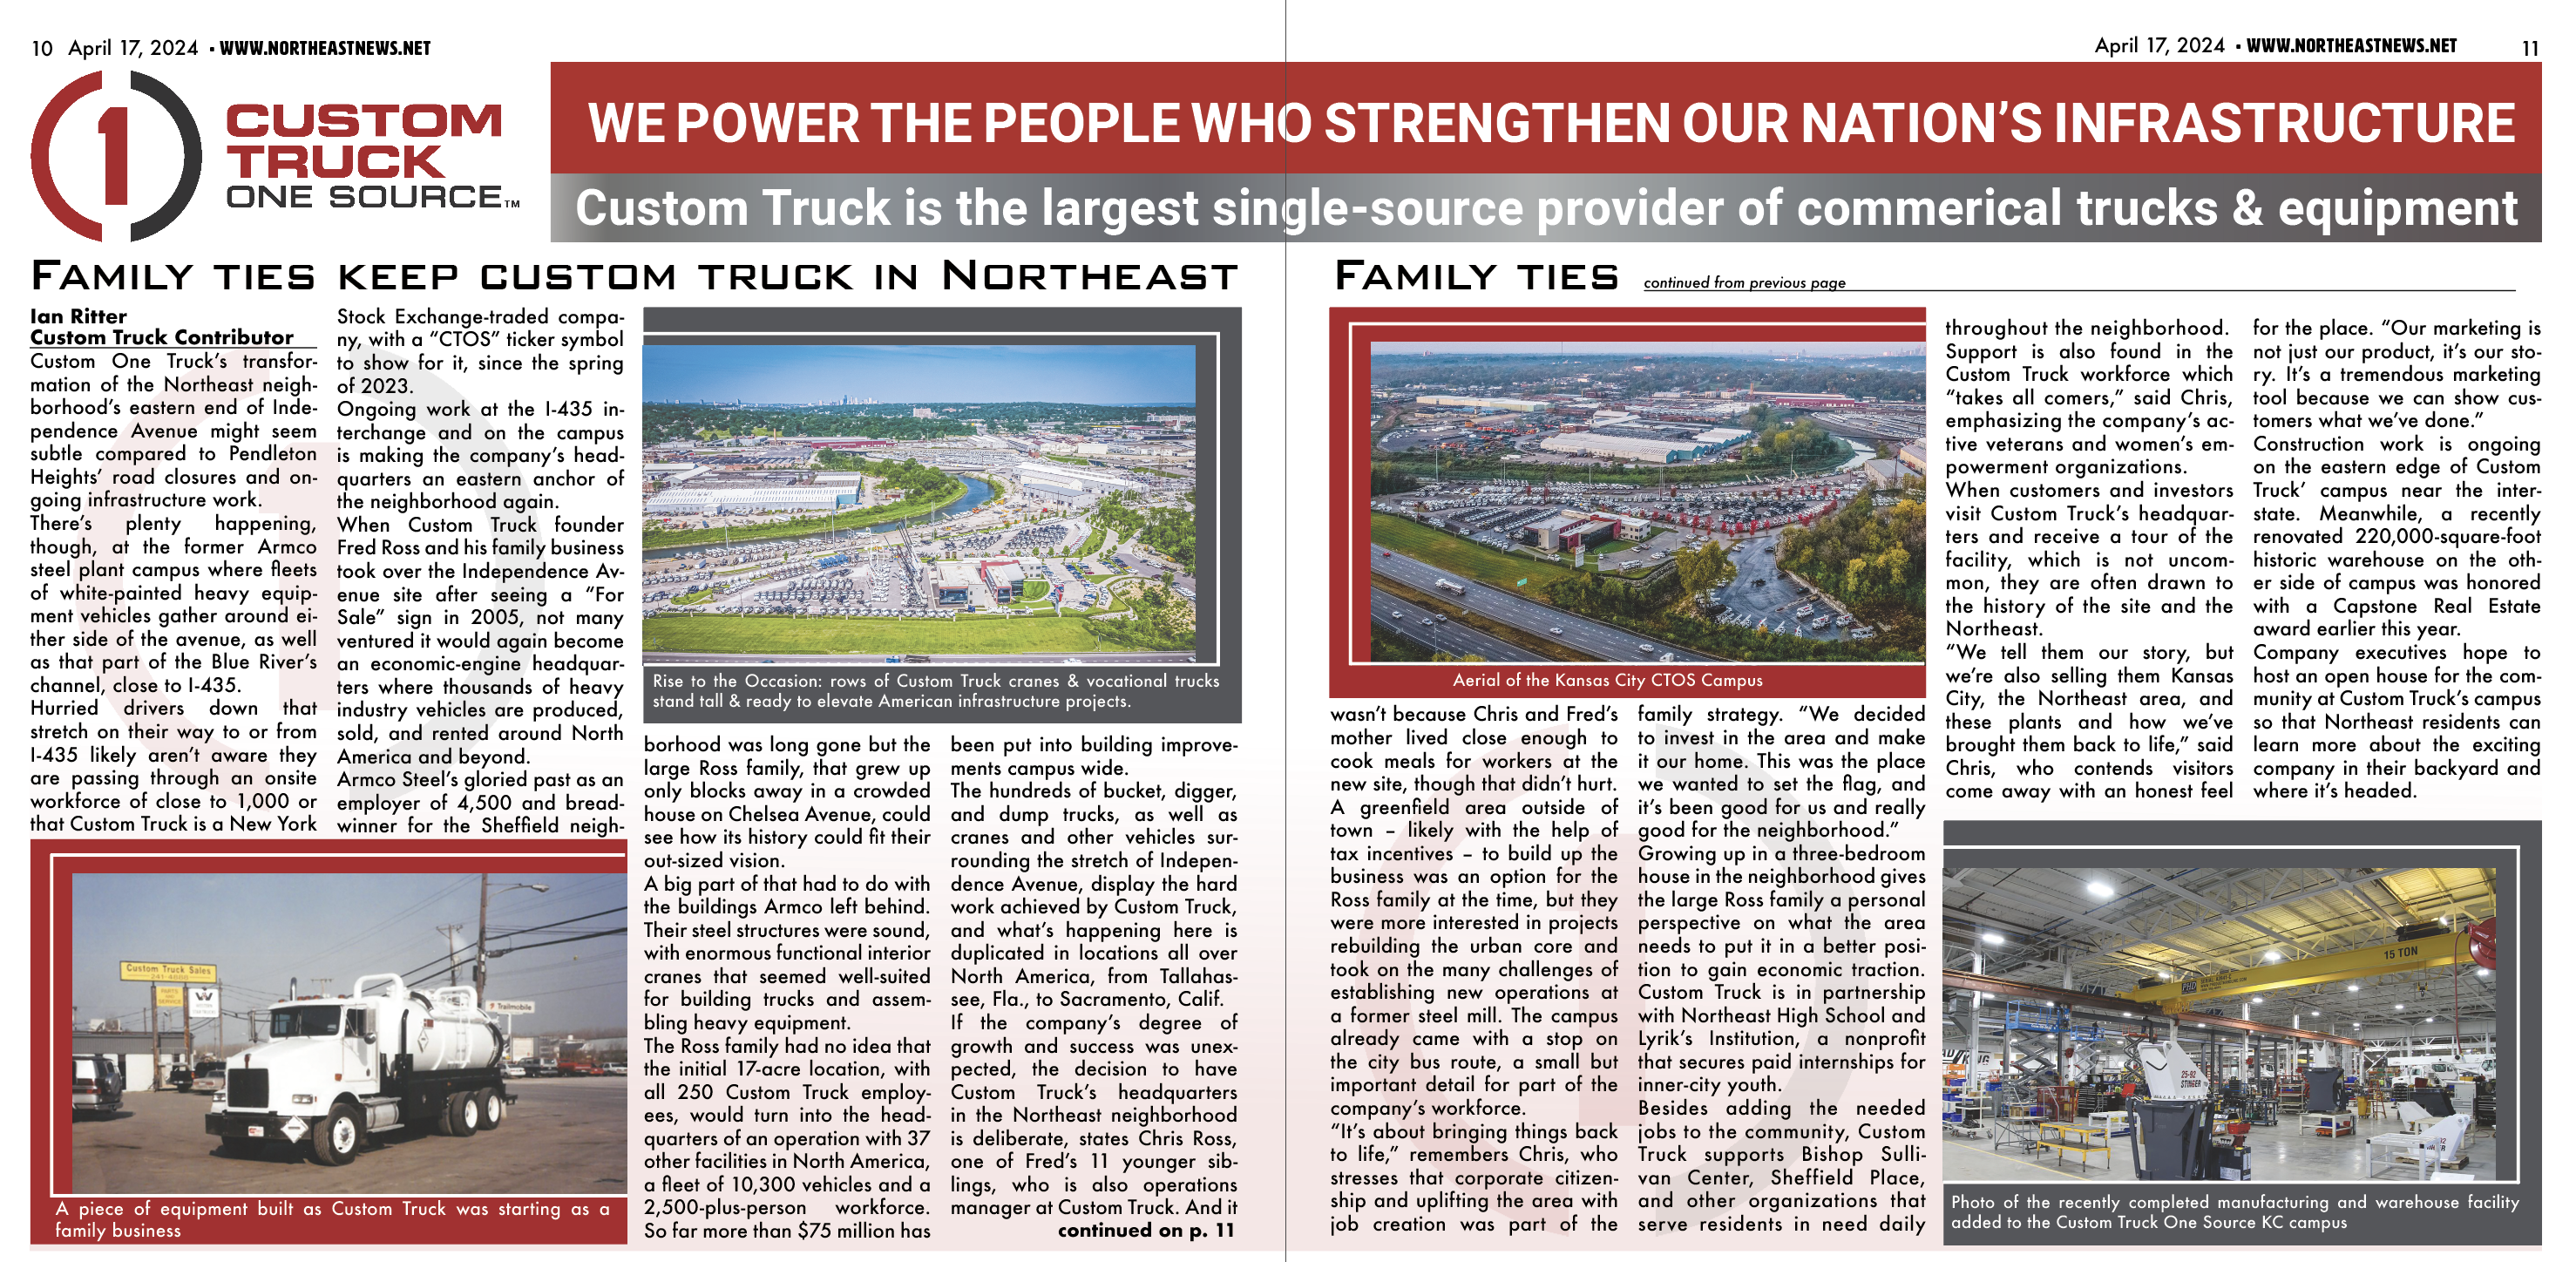 Family ties keep custom truck in Northeast